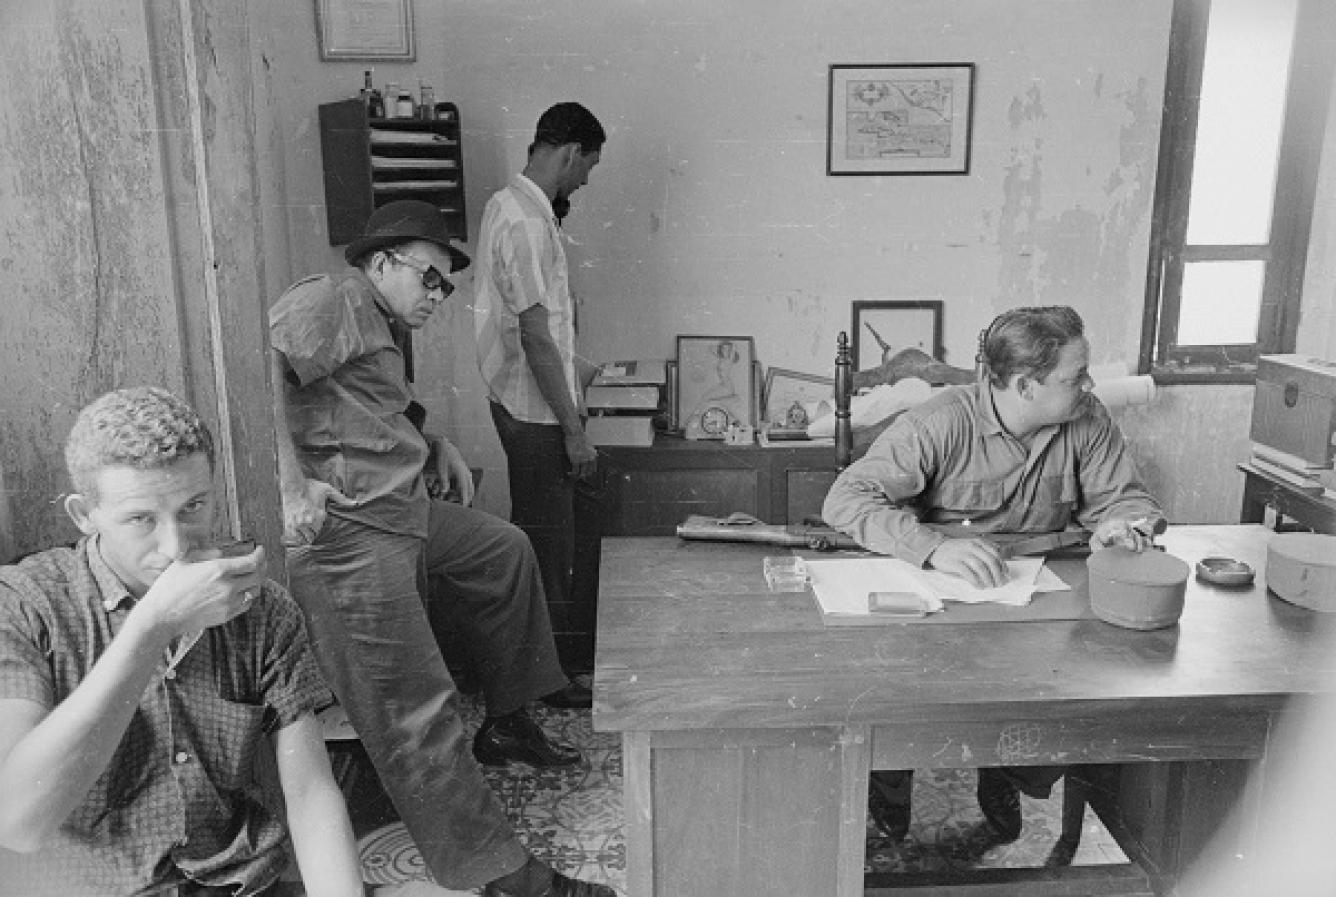 el líder rebelde dominicano Francisco Caamans Deno, en su cuartel general en SD durante la guerra